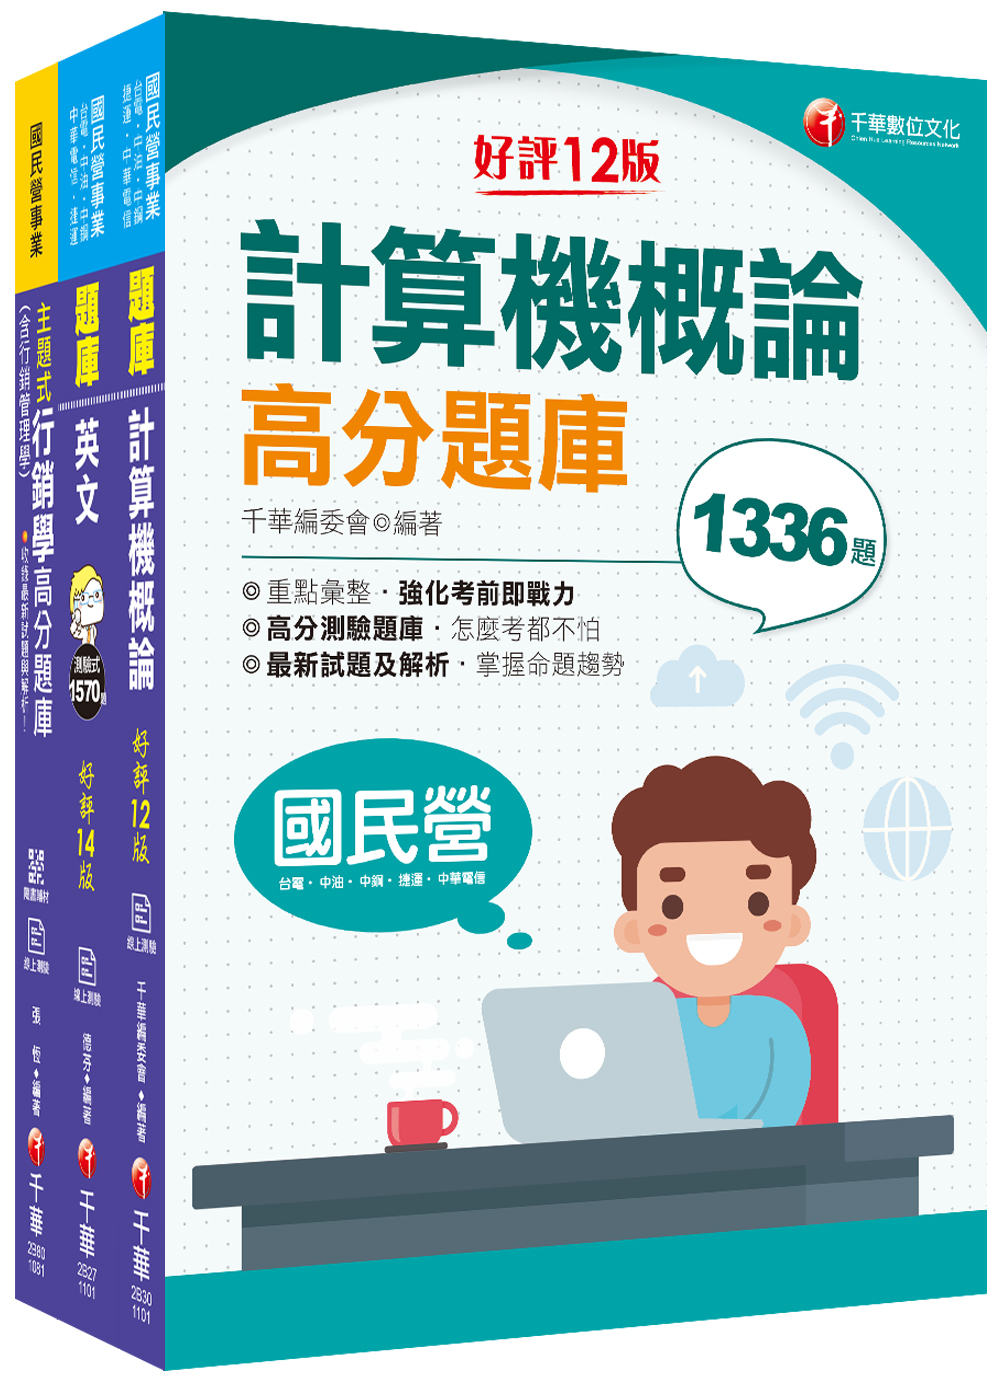 商品圖片 2022[工務類-企業客戶技術服務專業職(四)工程師]中華電信從業人員(基層專員)遴選題庫版套書